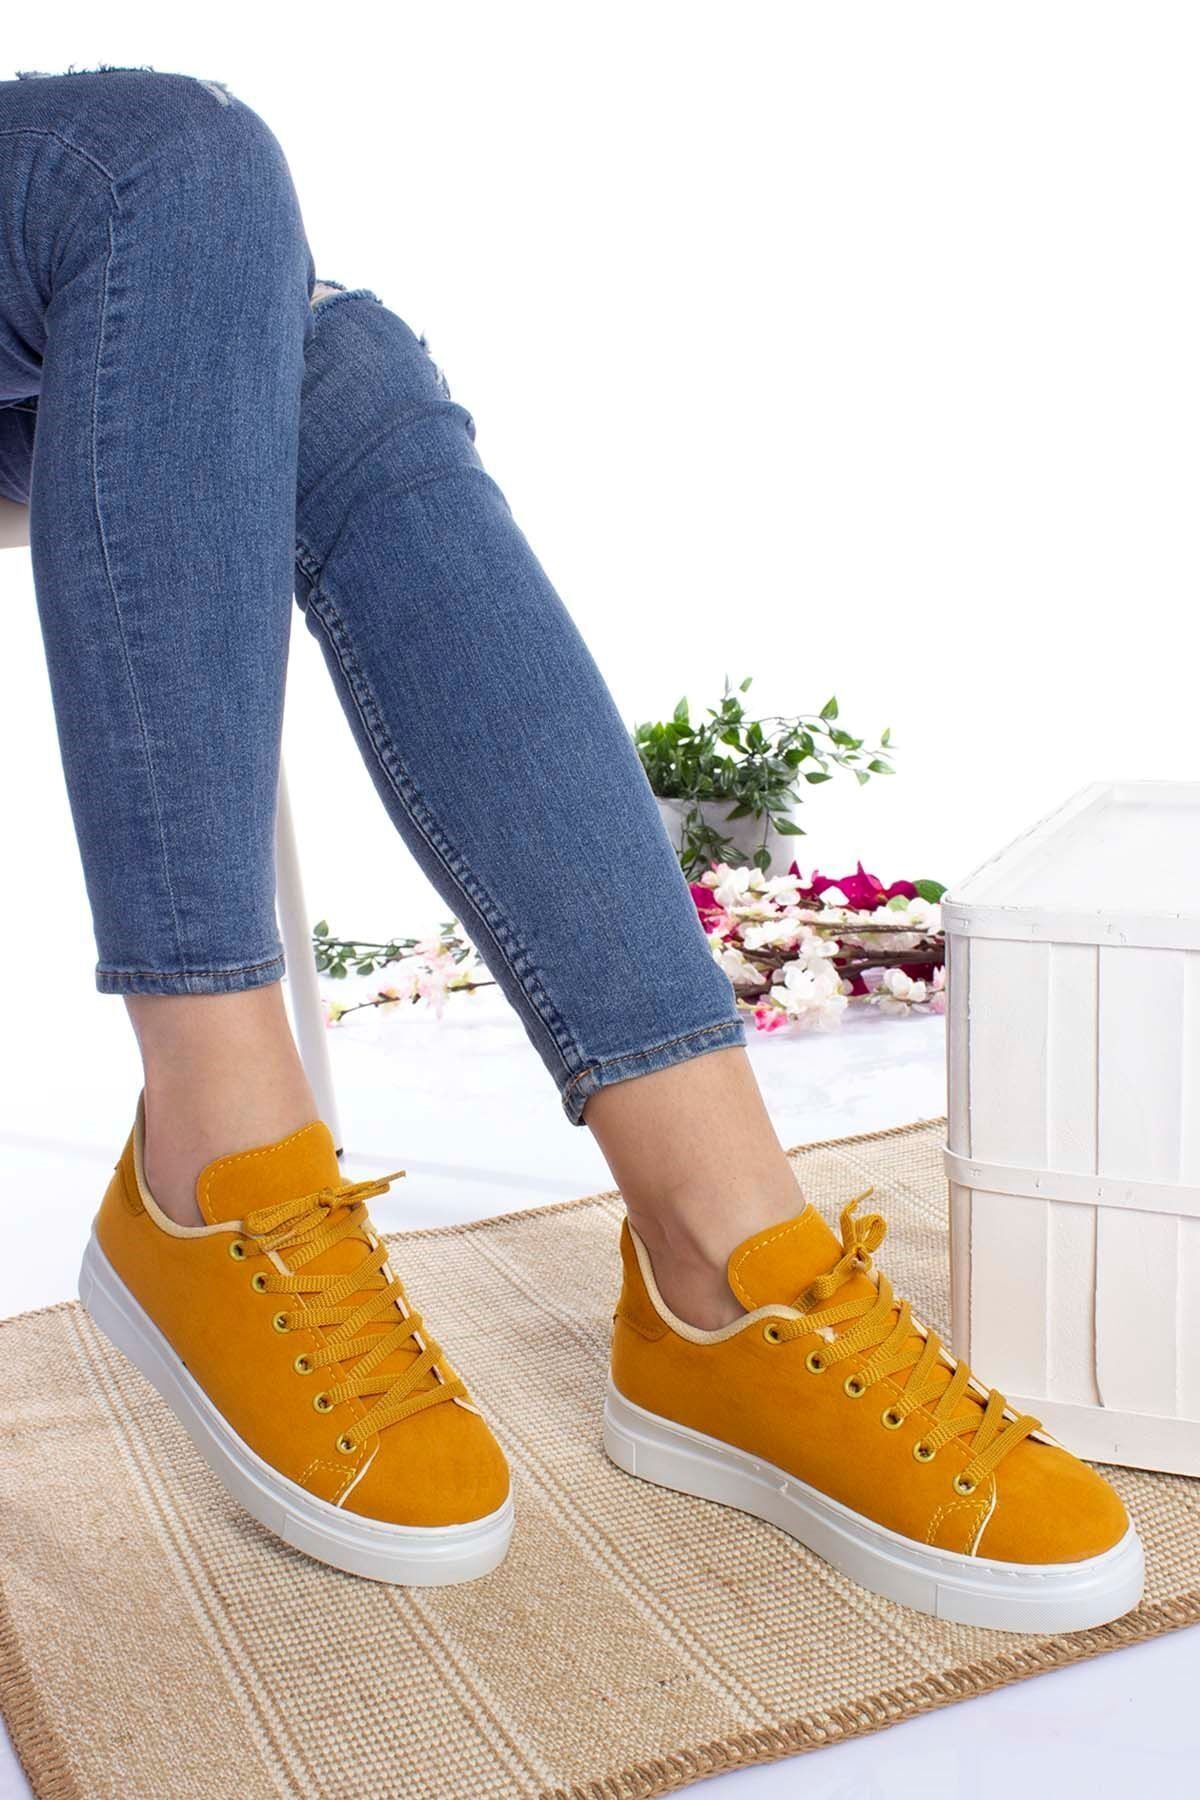 epaavm Kadın Sarı Bağcıklı Ayakkabı